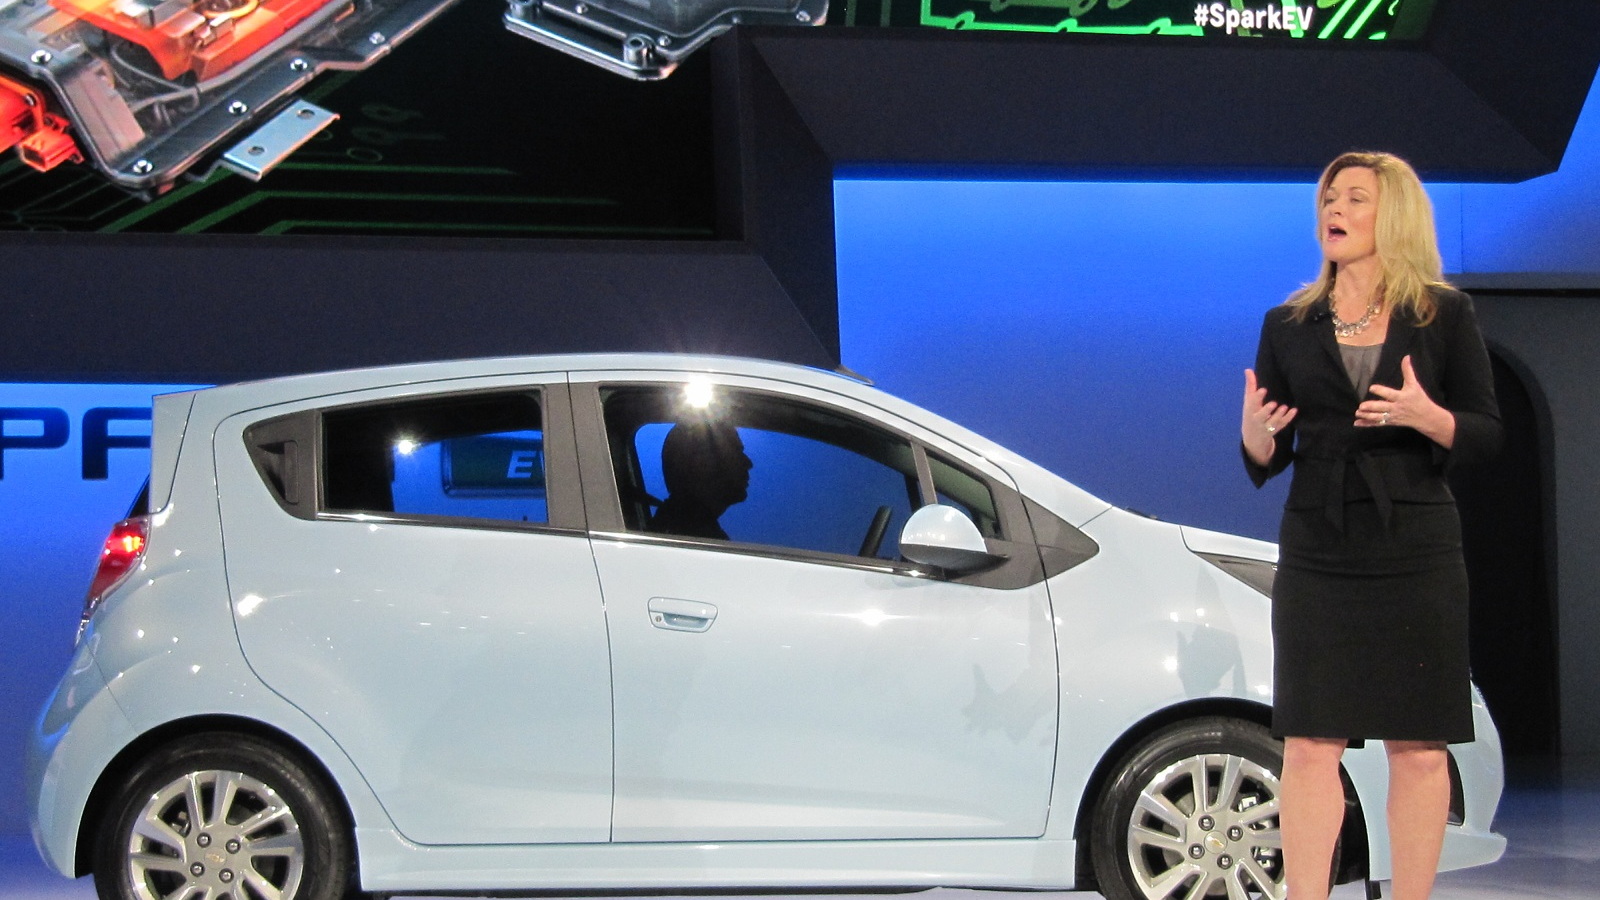 2014 Chevrolet Spark EV introduction, 2012 Los Angeles Auto Show